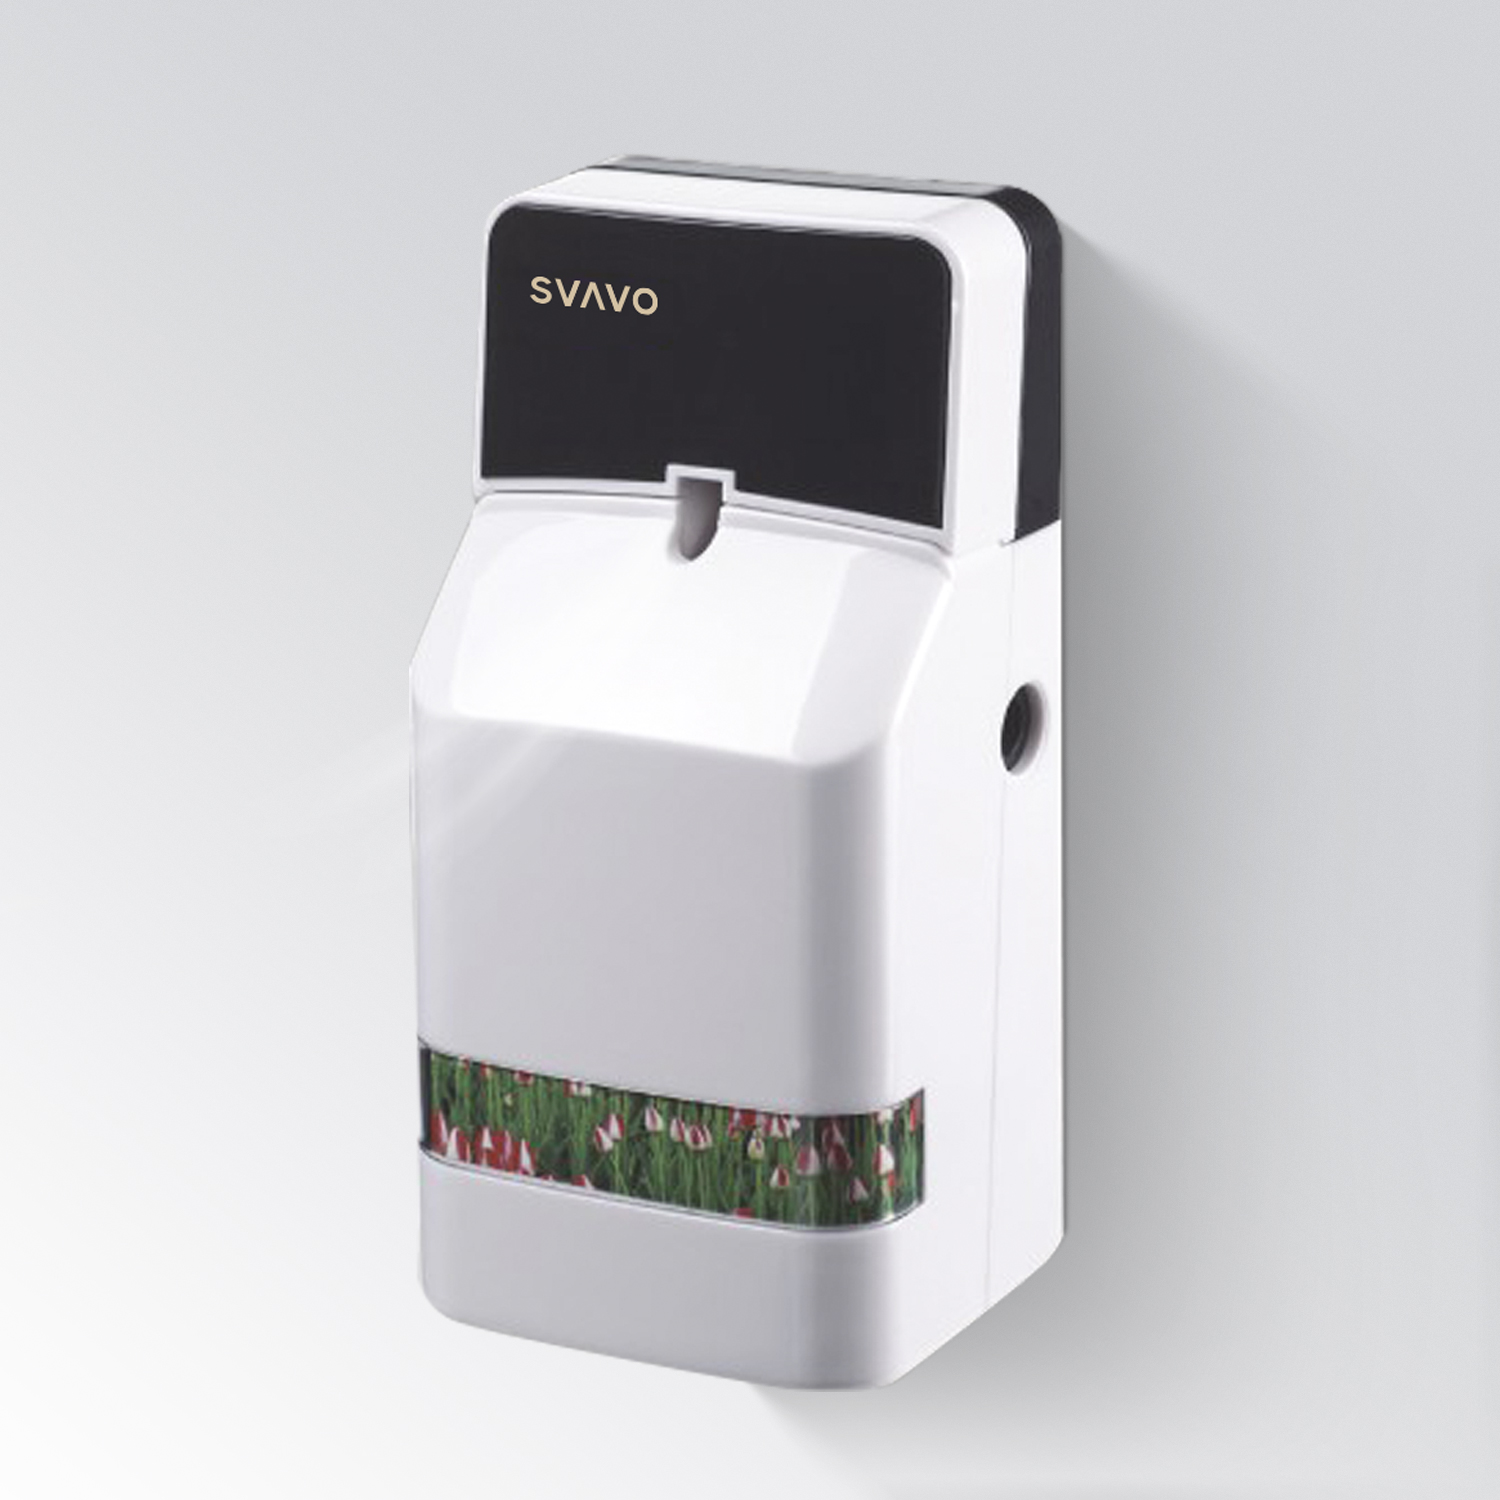 Bathroom Room Air Freshener Dispenser V-EP710